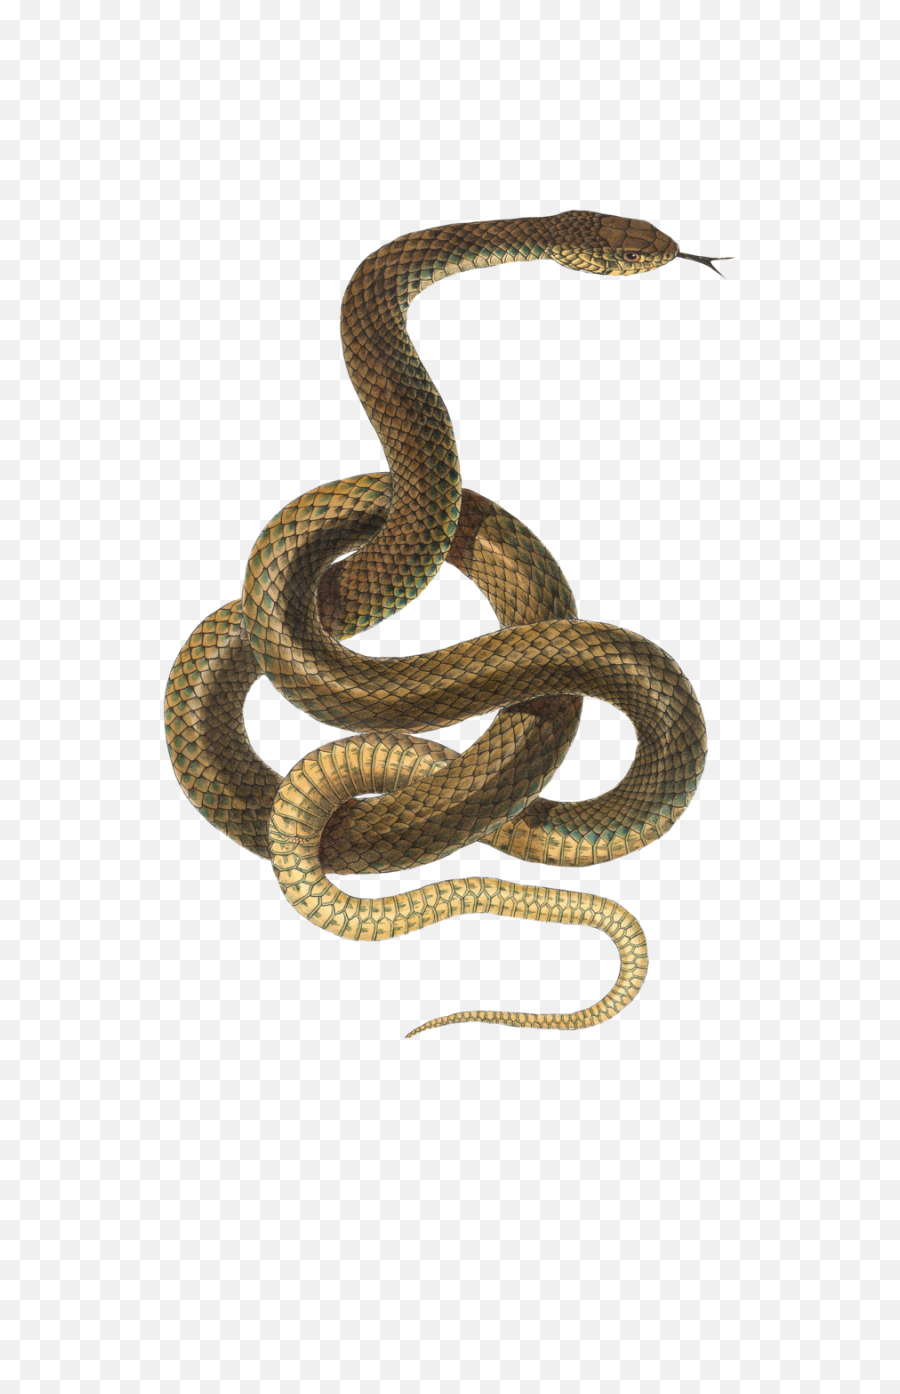 Snake Png Transparent - Transparent Background Snake Transparent,Cartoon Snake Png